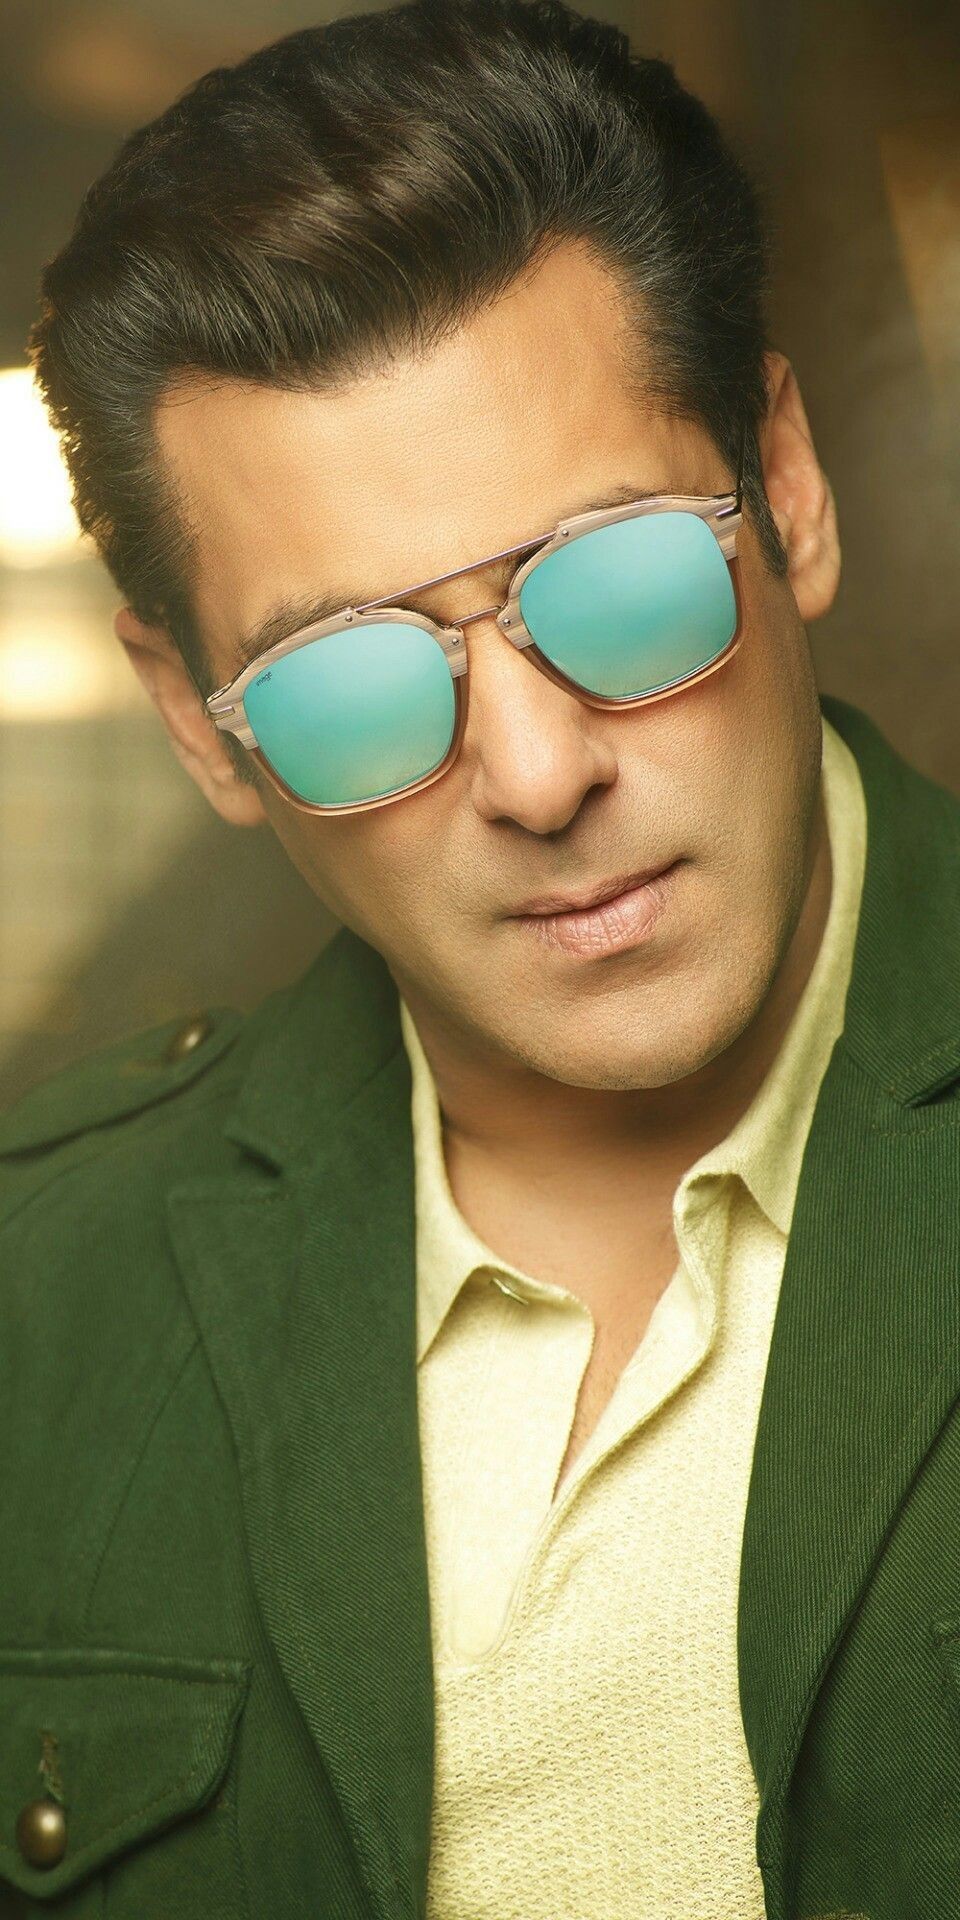 Salman Khan Photo Hd 2019 - 960x1920 Wallpaper 